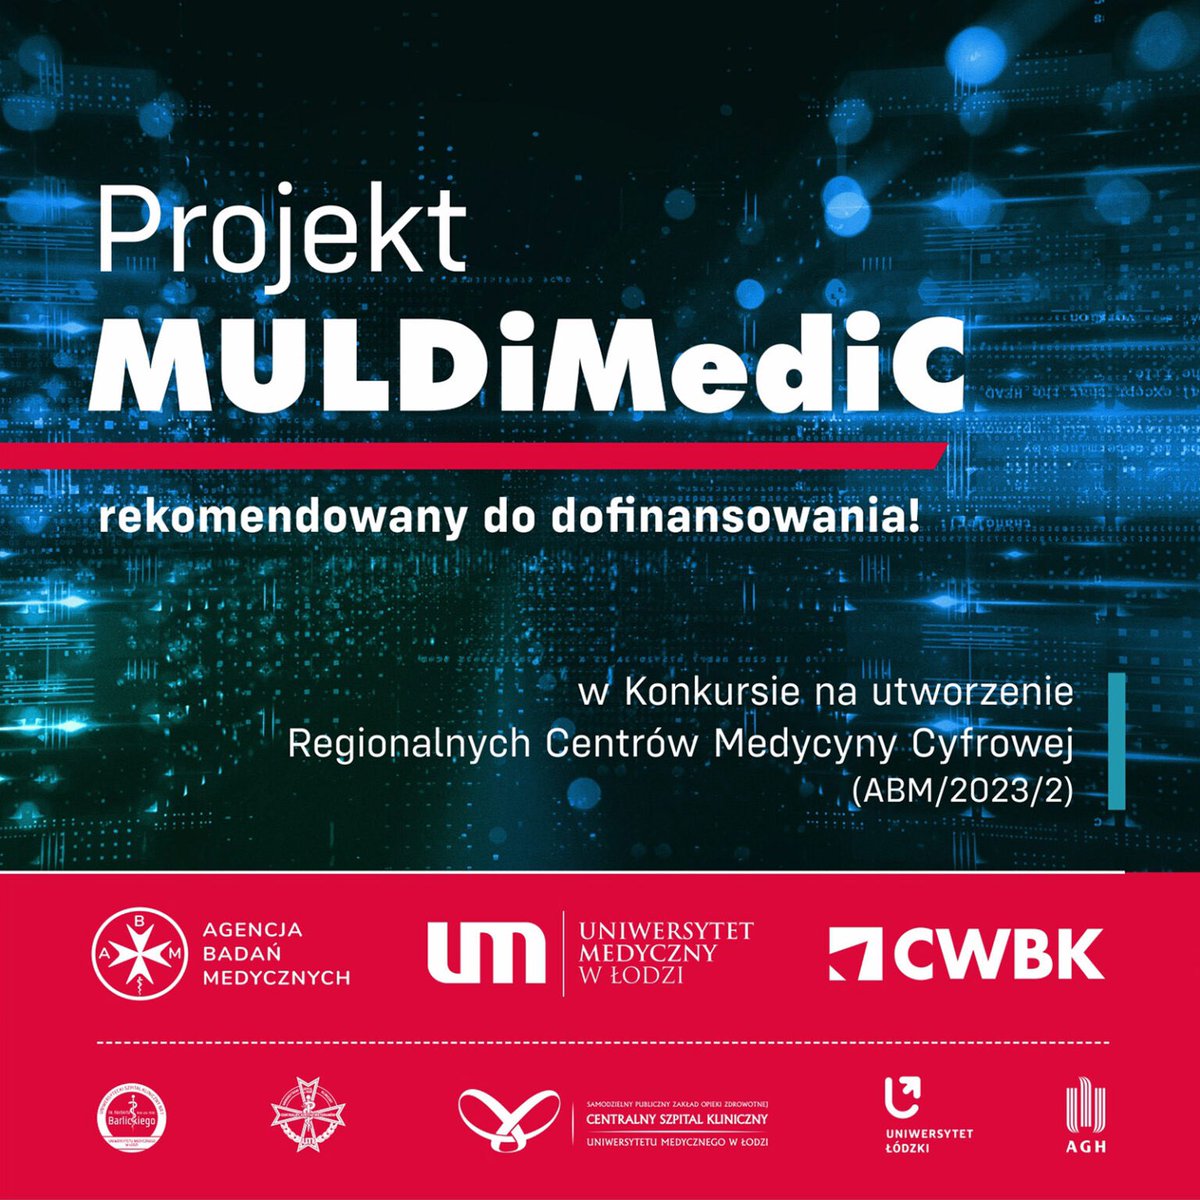 Już jutro w uczelnianym Centrum Wsparcia Badań Klinicznych prezentacja projektu MULDiMediC oraz briefing prasowy z udziałem @R_Sierpinski, prezesa @AgencjaBadanMed Zapraszamy, @tvp3_lodz @radiolodz @Wyborcza_Lodz @m_szkudlarek @DziennikLodzki @Tu_Lodz